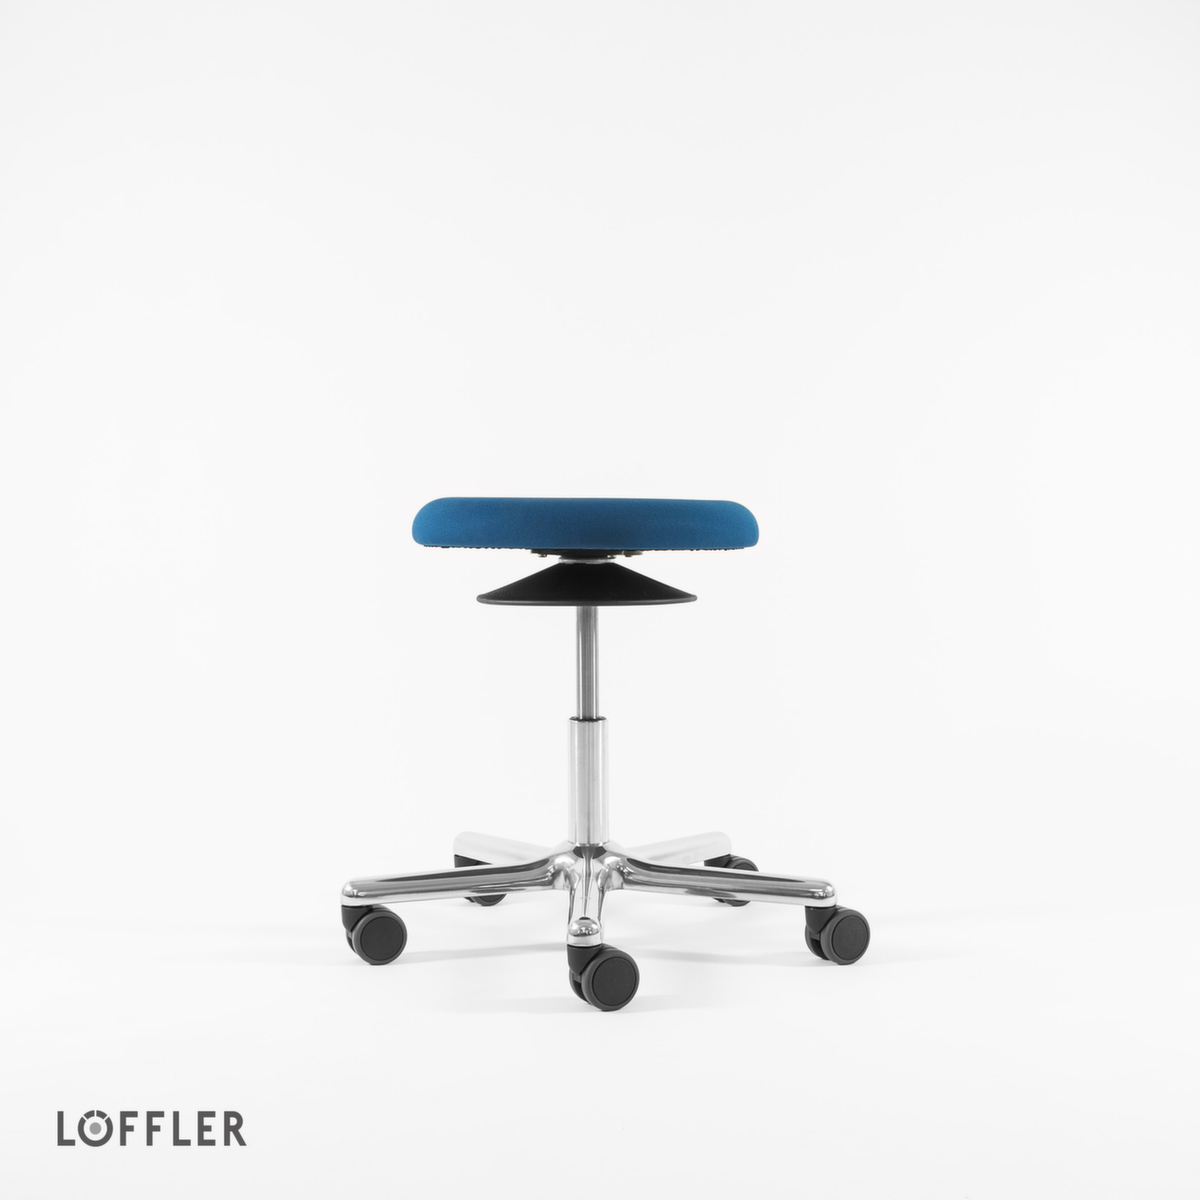 Löffler Tabouret pivotant Ergo avec assise réglable en hauteur, assise bleu, roulettes  ZOOM